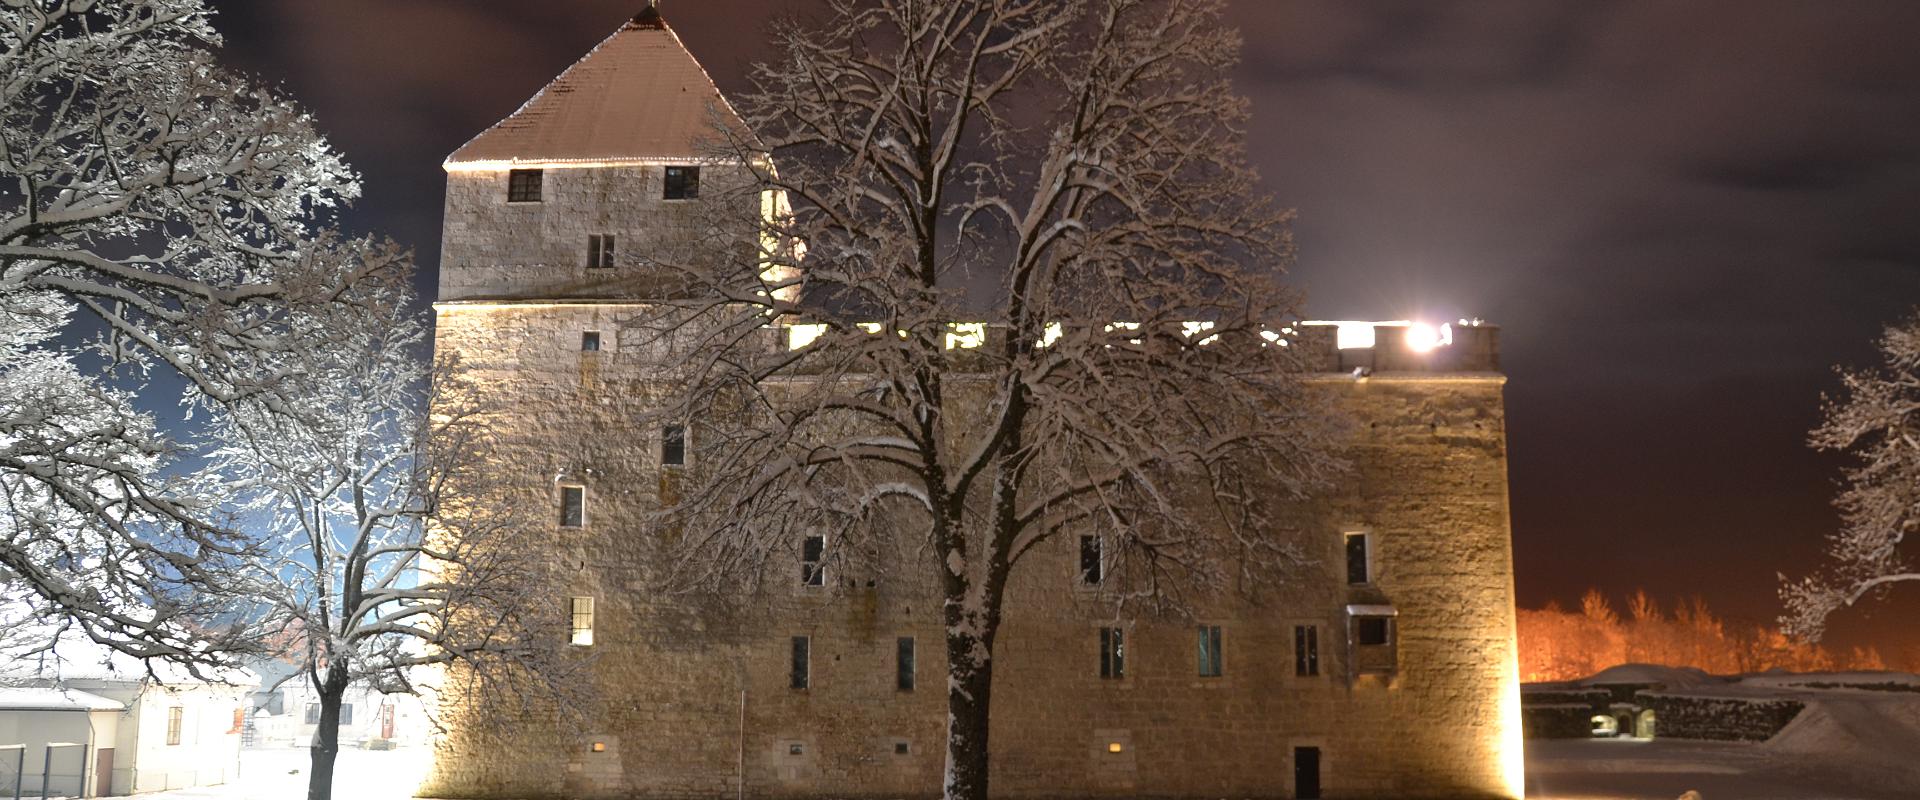 Burg von Kuressaare (dt. Arensburg)